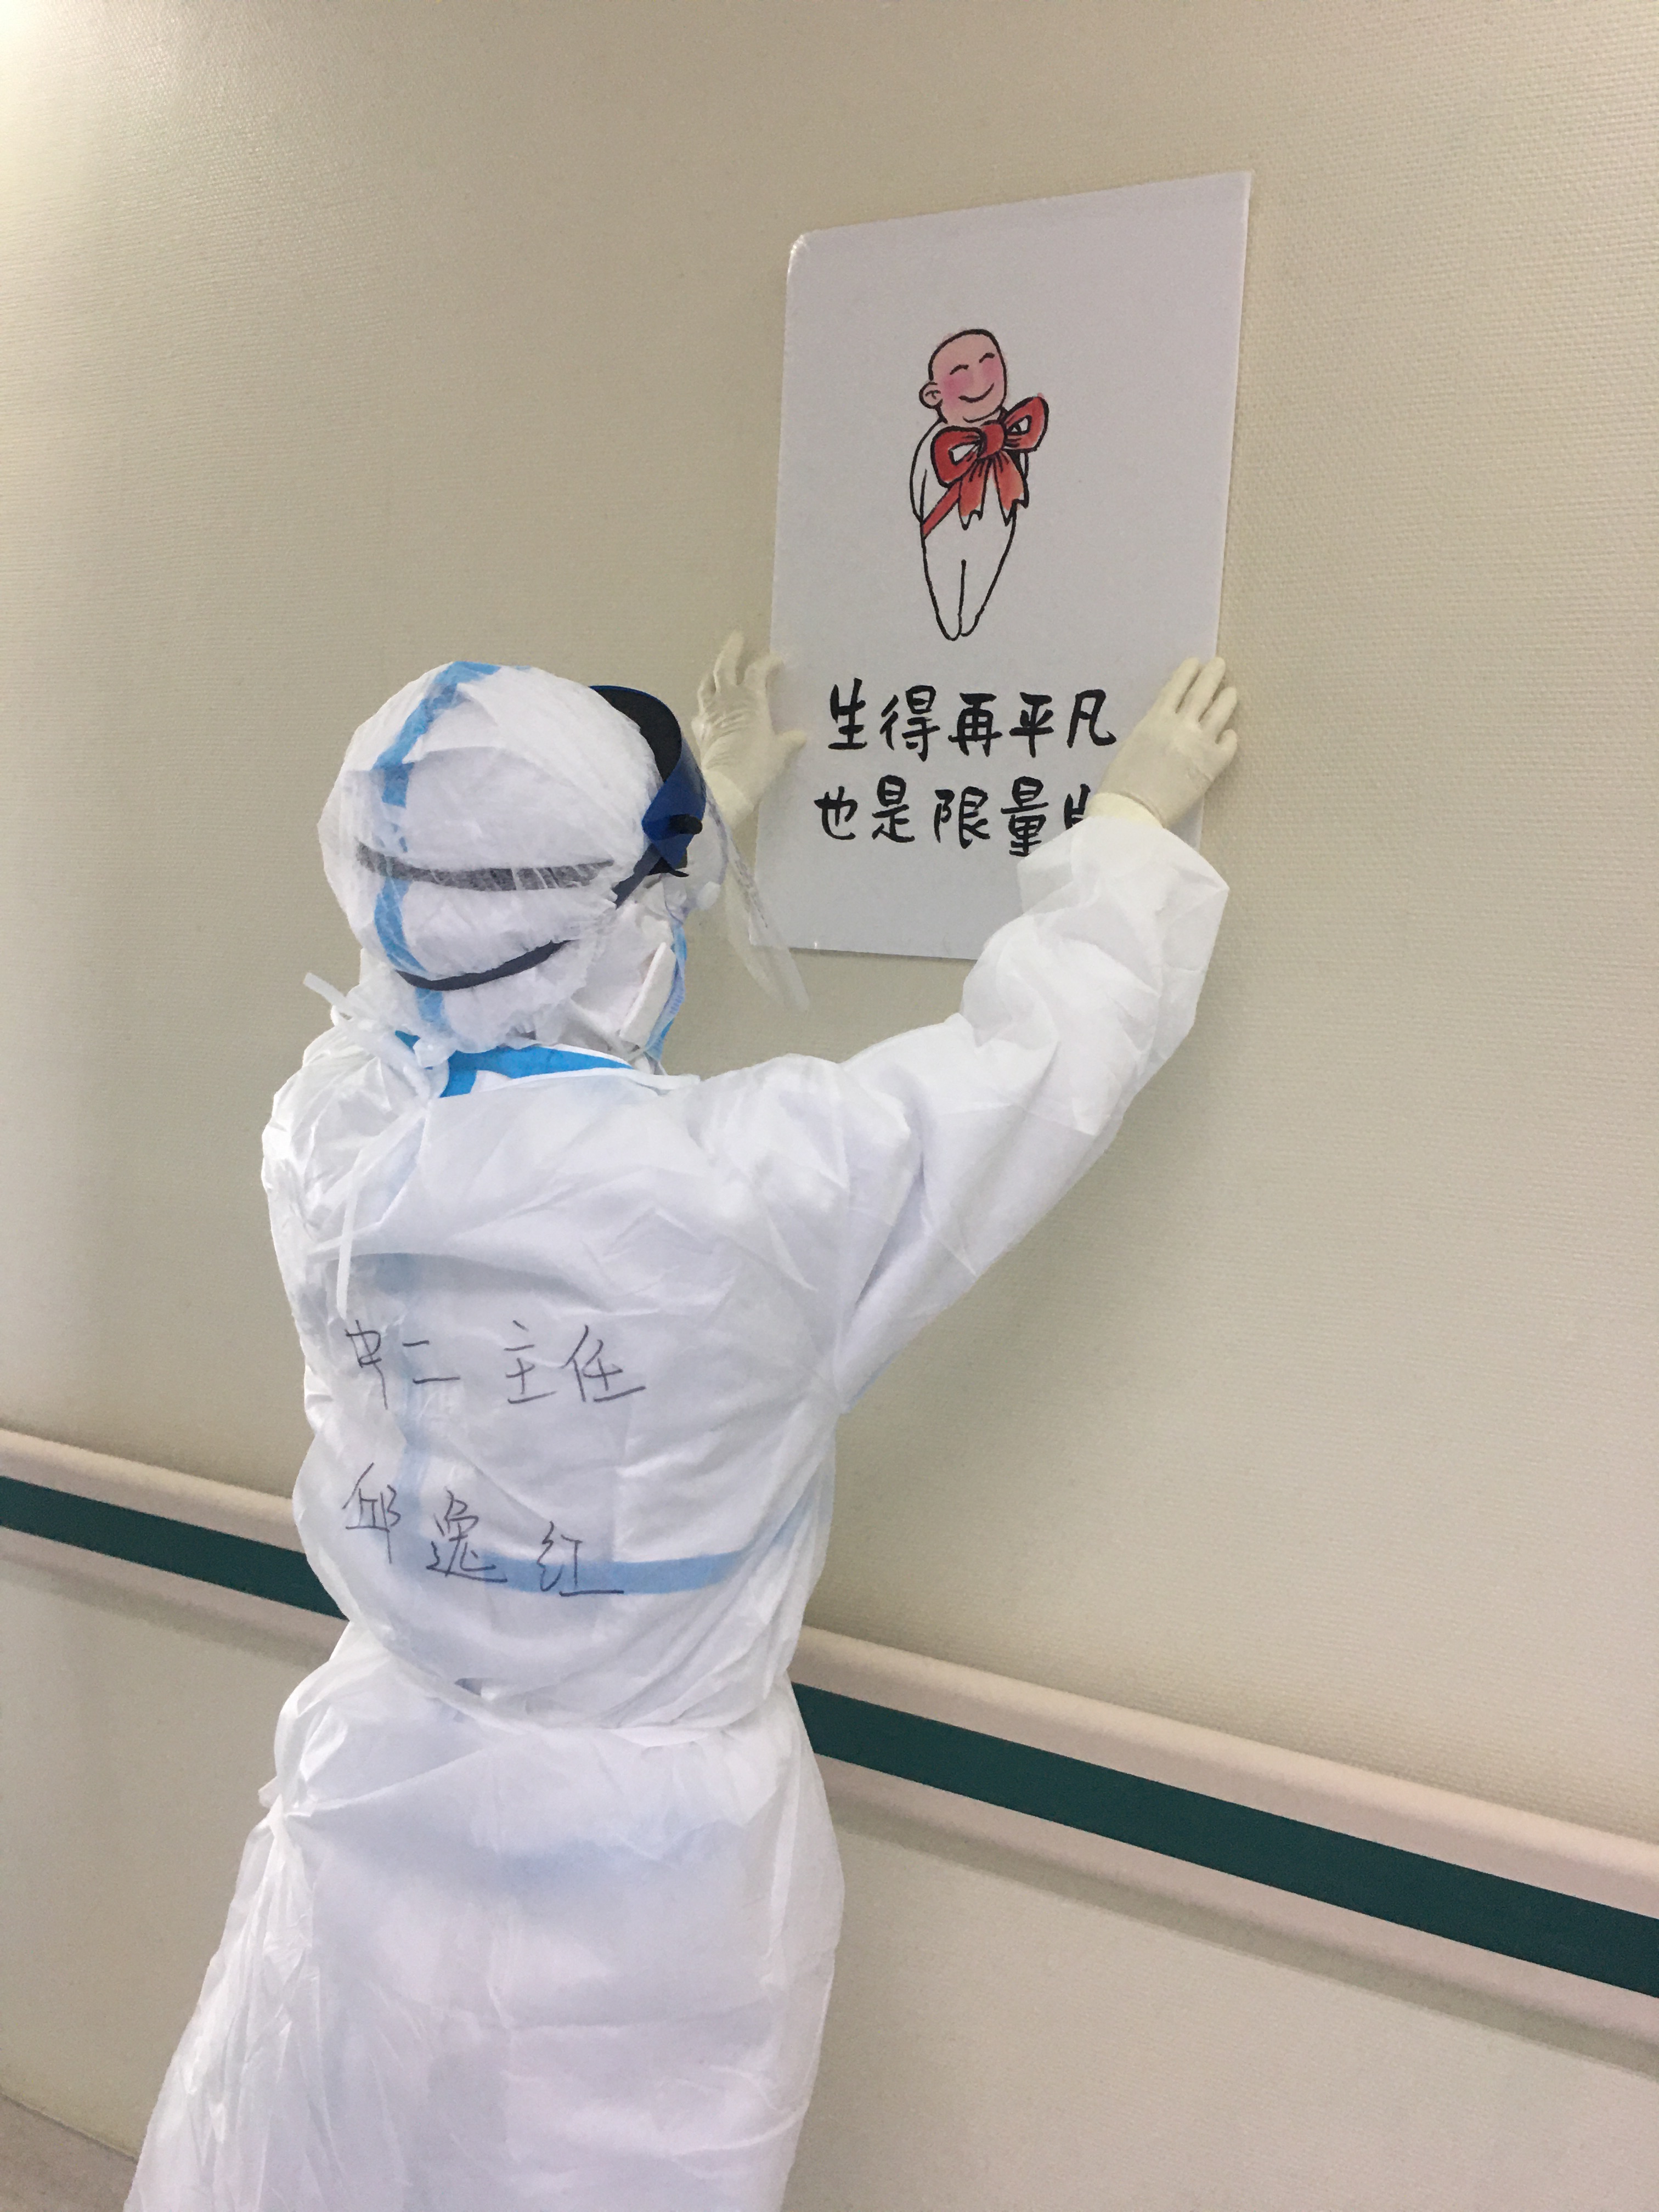 邱逸红在病区走廊贴上治愈系漫画，营造温馨的病区环境.jpg